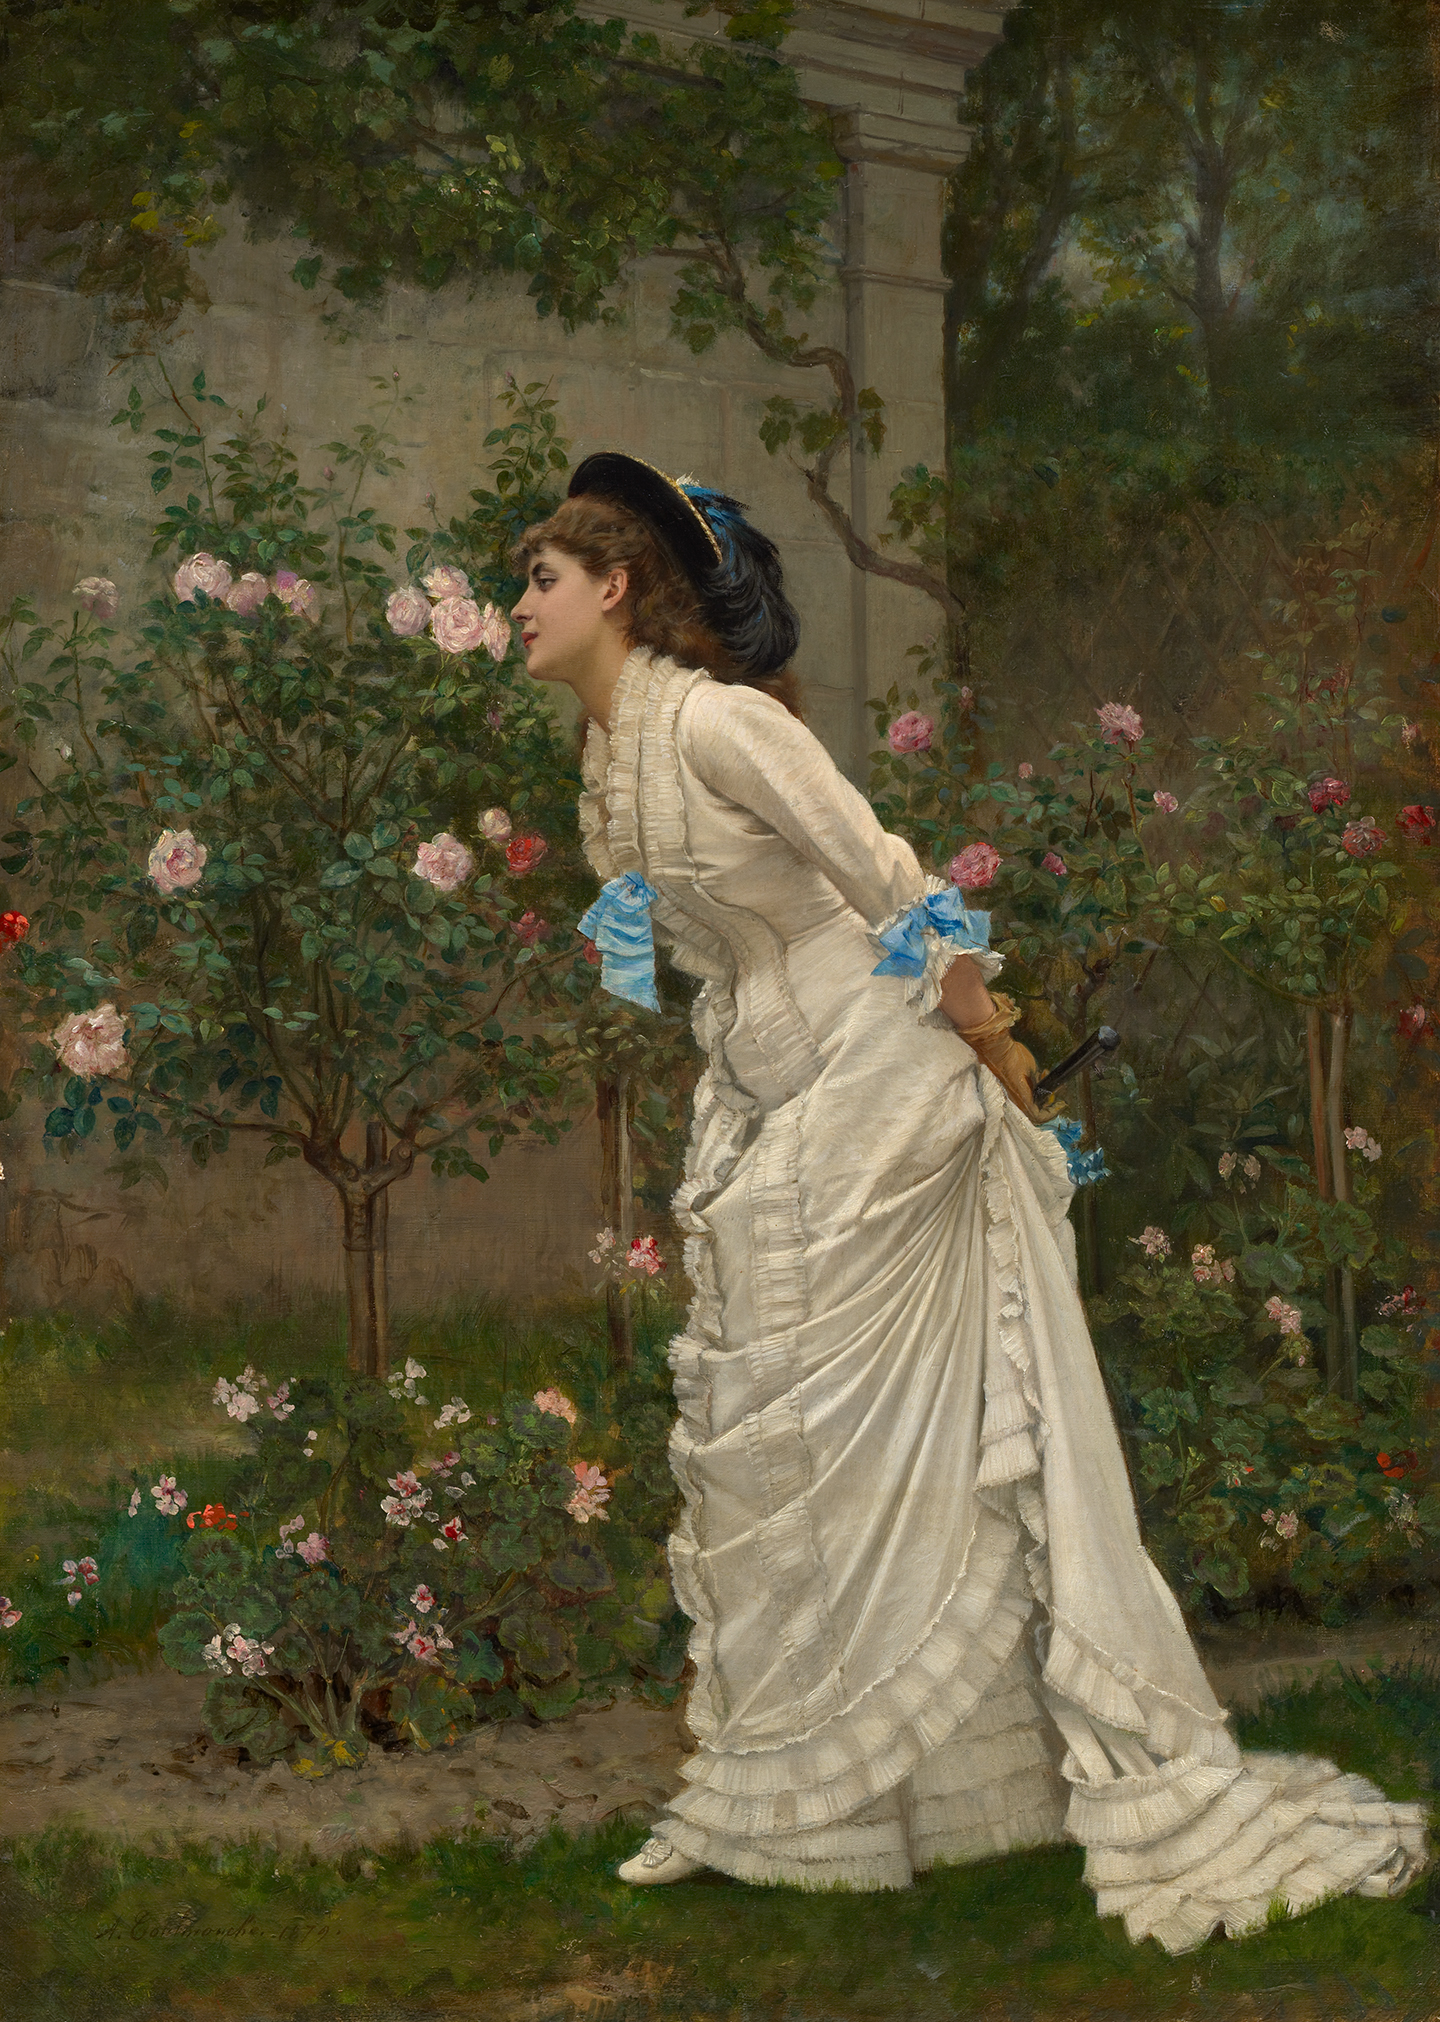 Bức tranh “Woman and Roses” (Cô Gái và Hoa Hồng), năm 1879, của họa sỹ Auguste Toulmouche. Sơn dầu trên vải canvas. Viện Nghệ thuật Clark, Williamstown, Massachusetts. (Ảnh: Tư liệu công cộng)